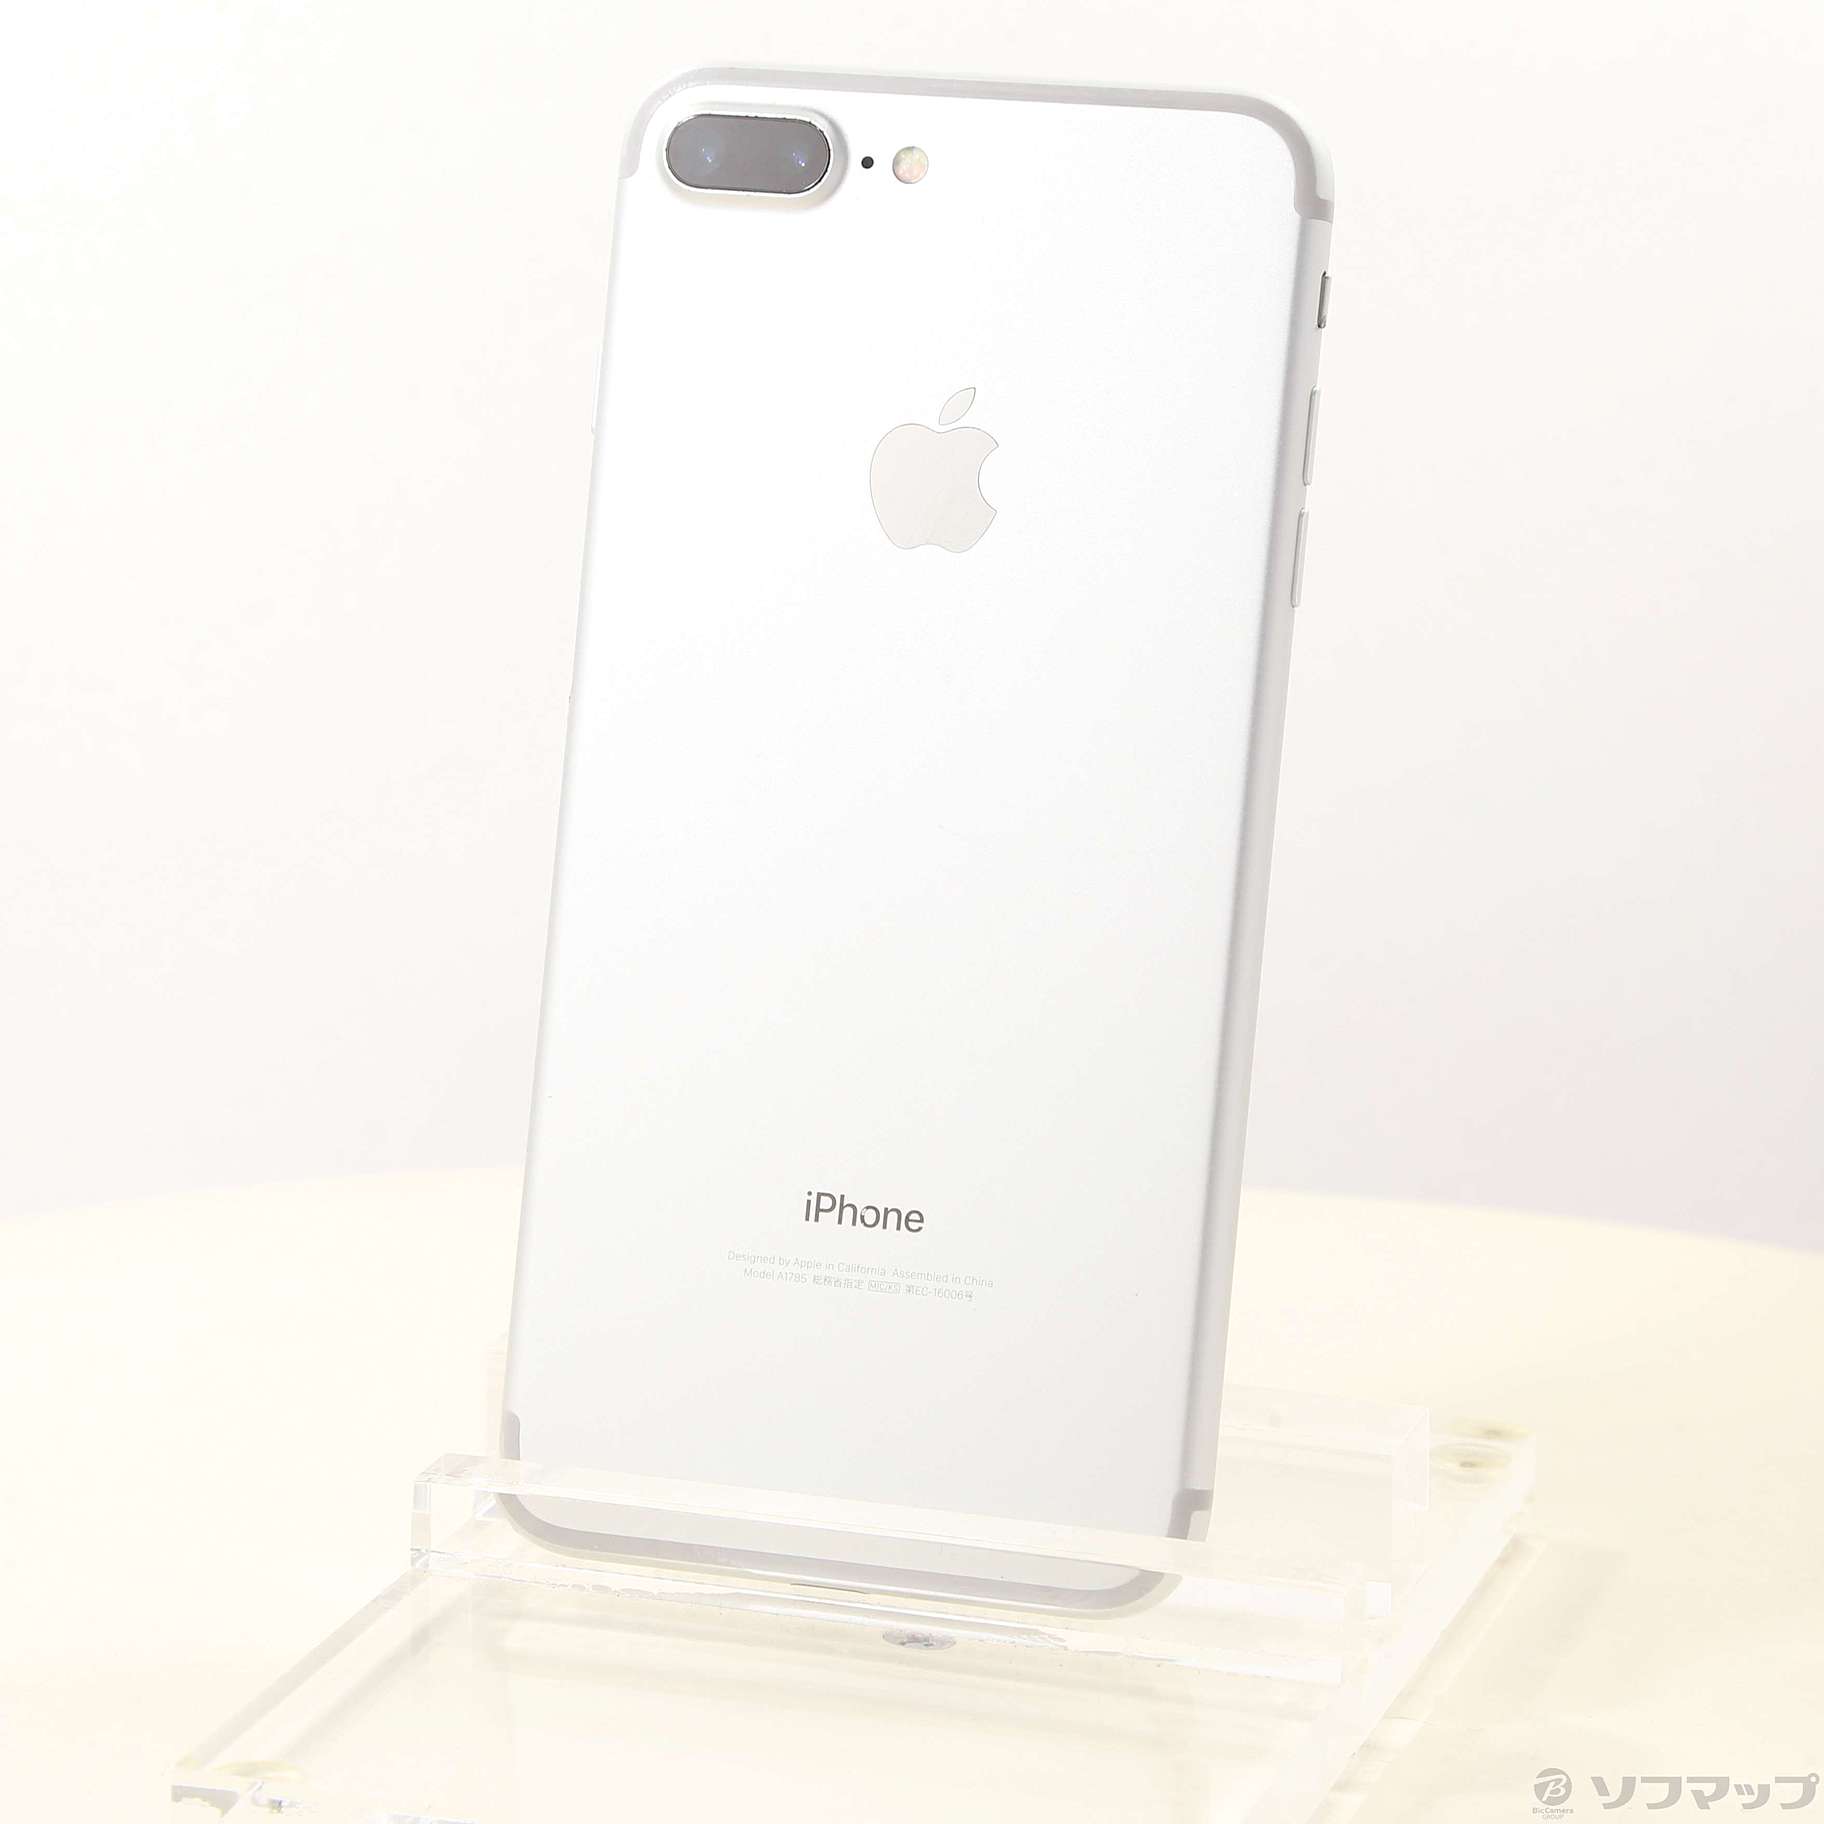 iPhone 7 Plus Silver 256 GB SIMフリー